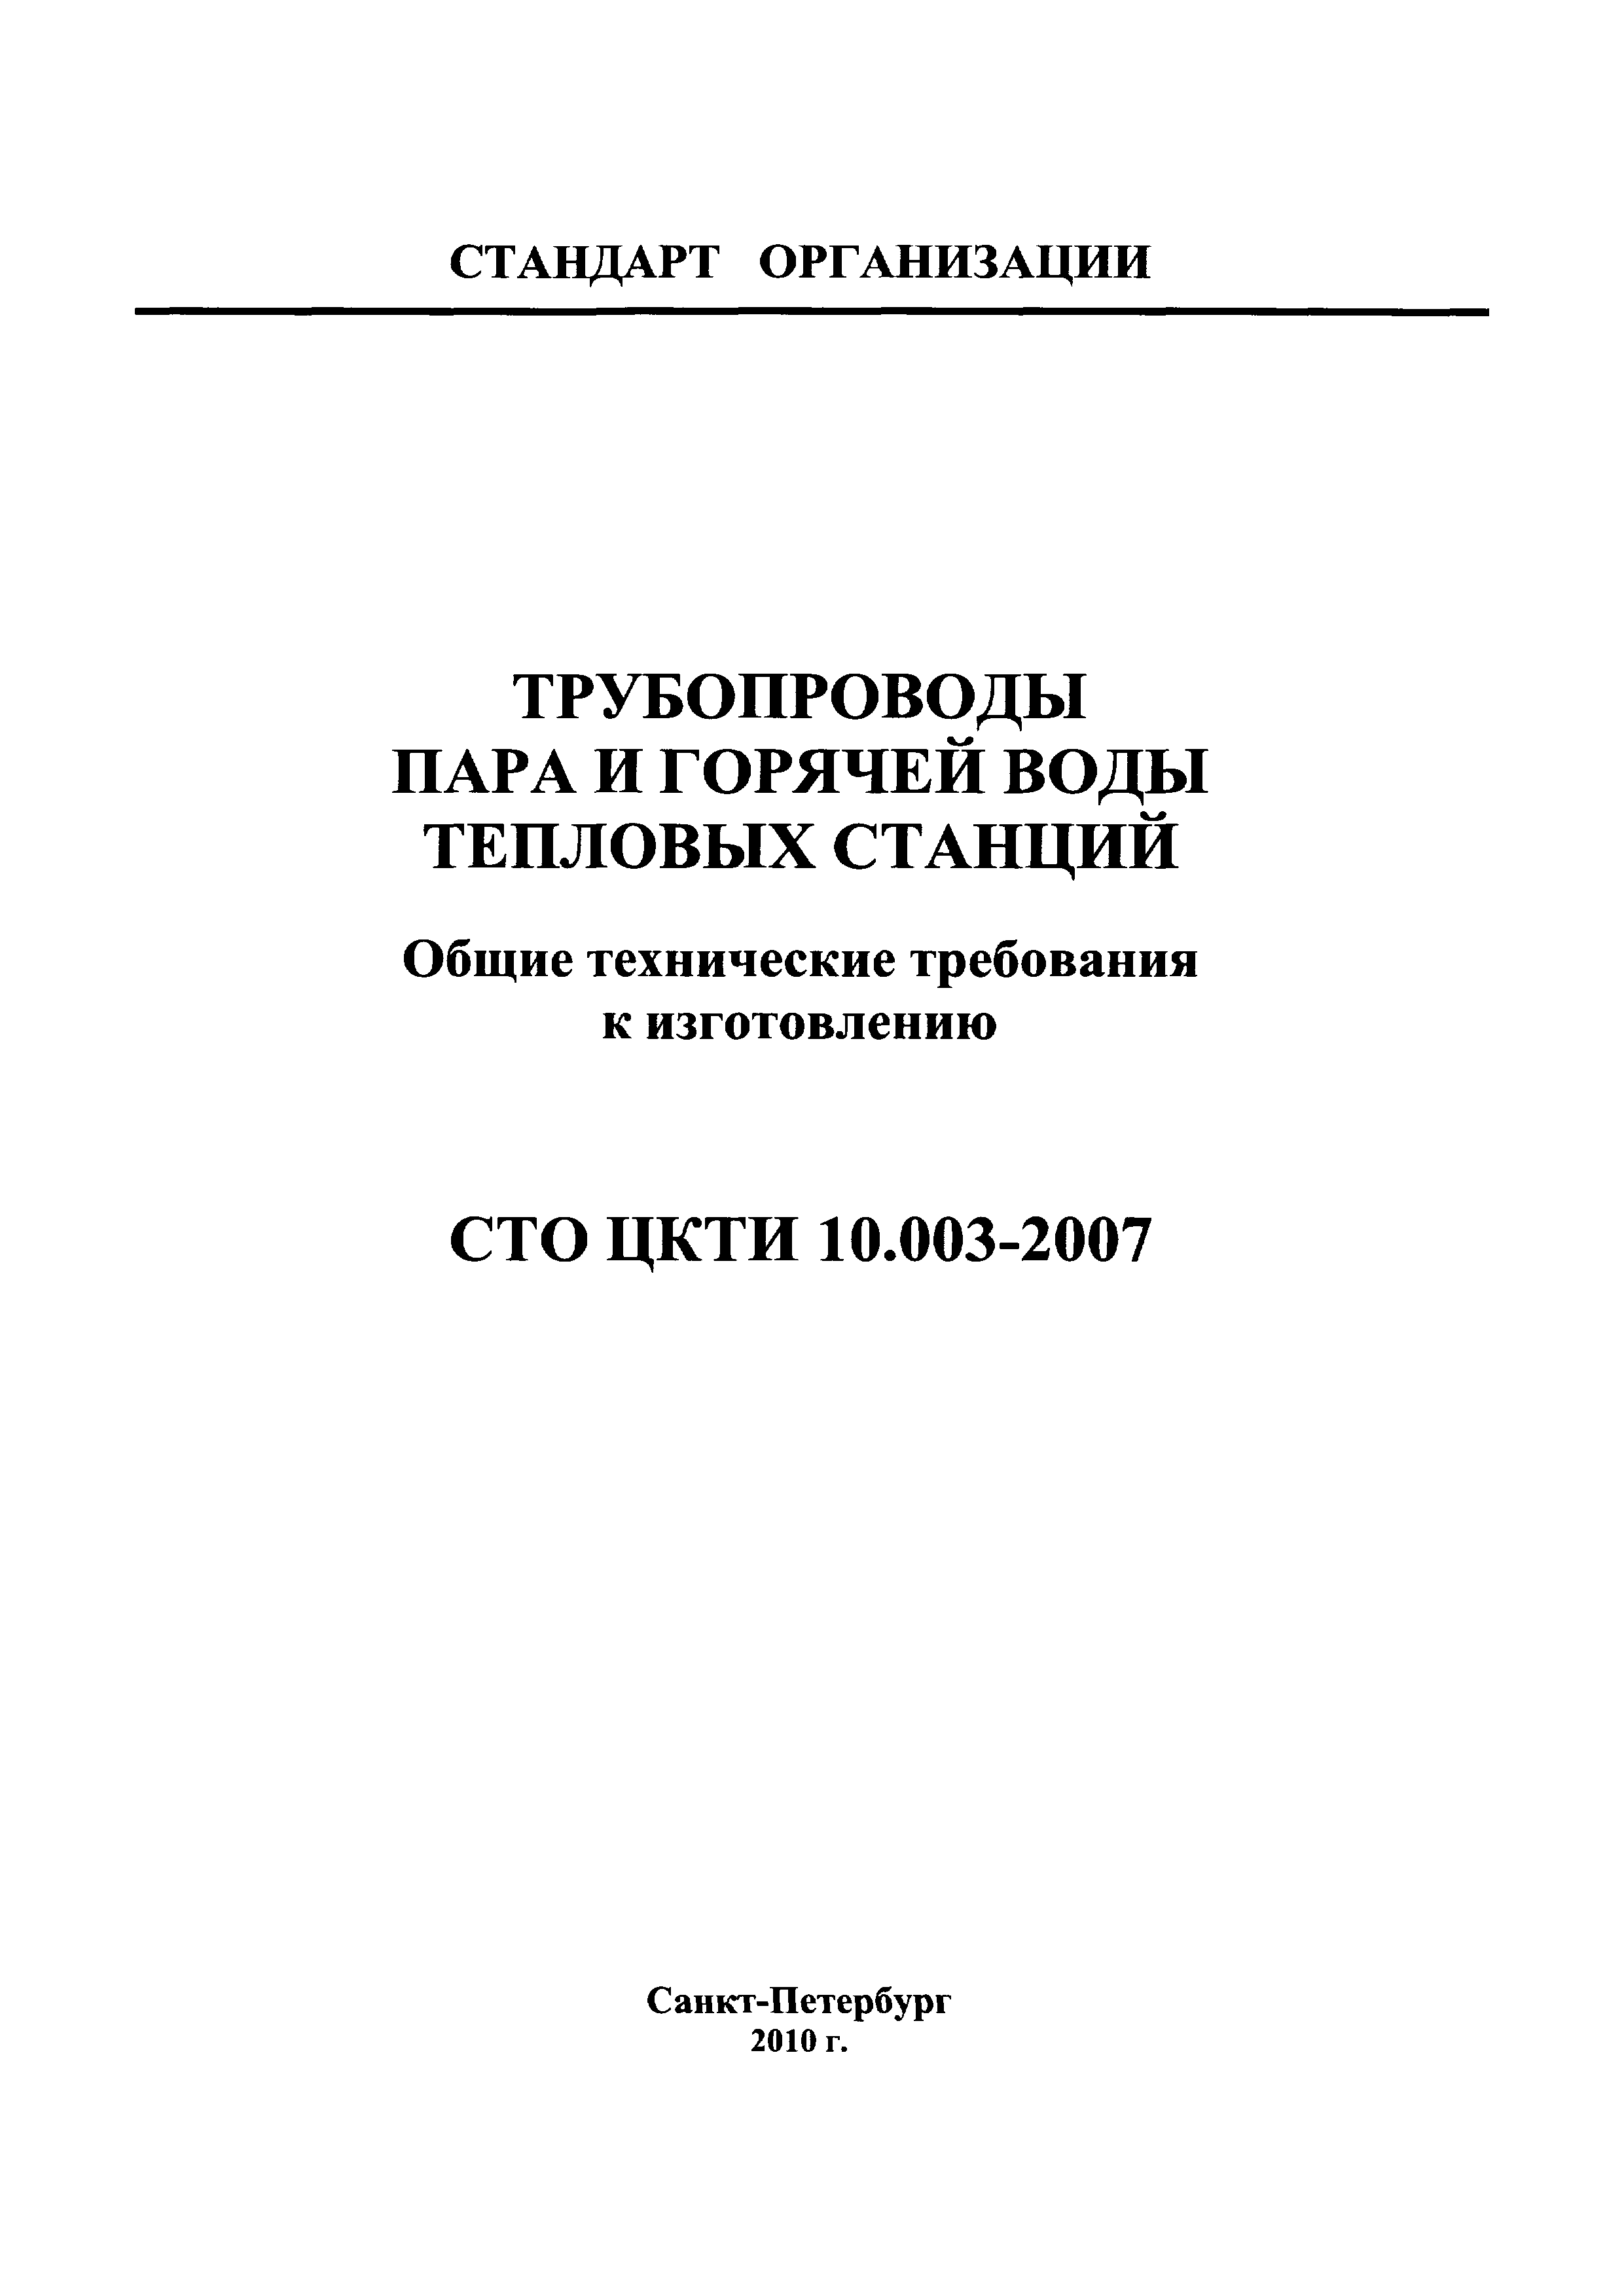 СТО ЦКТИ 10.003-2007